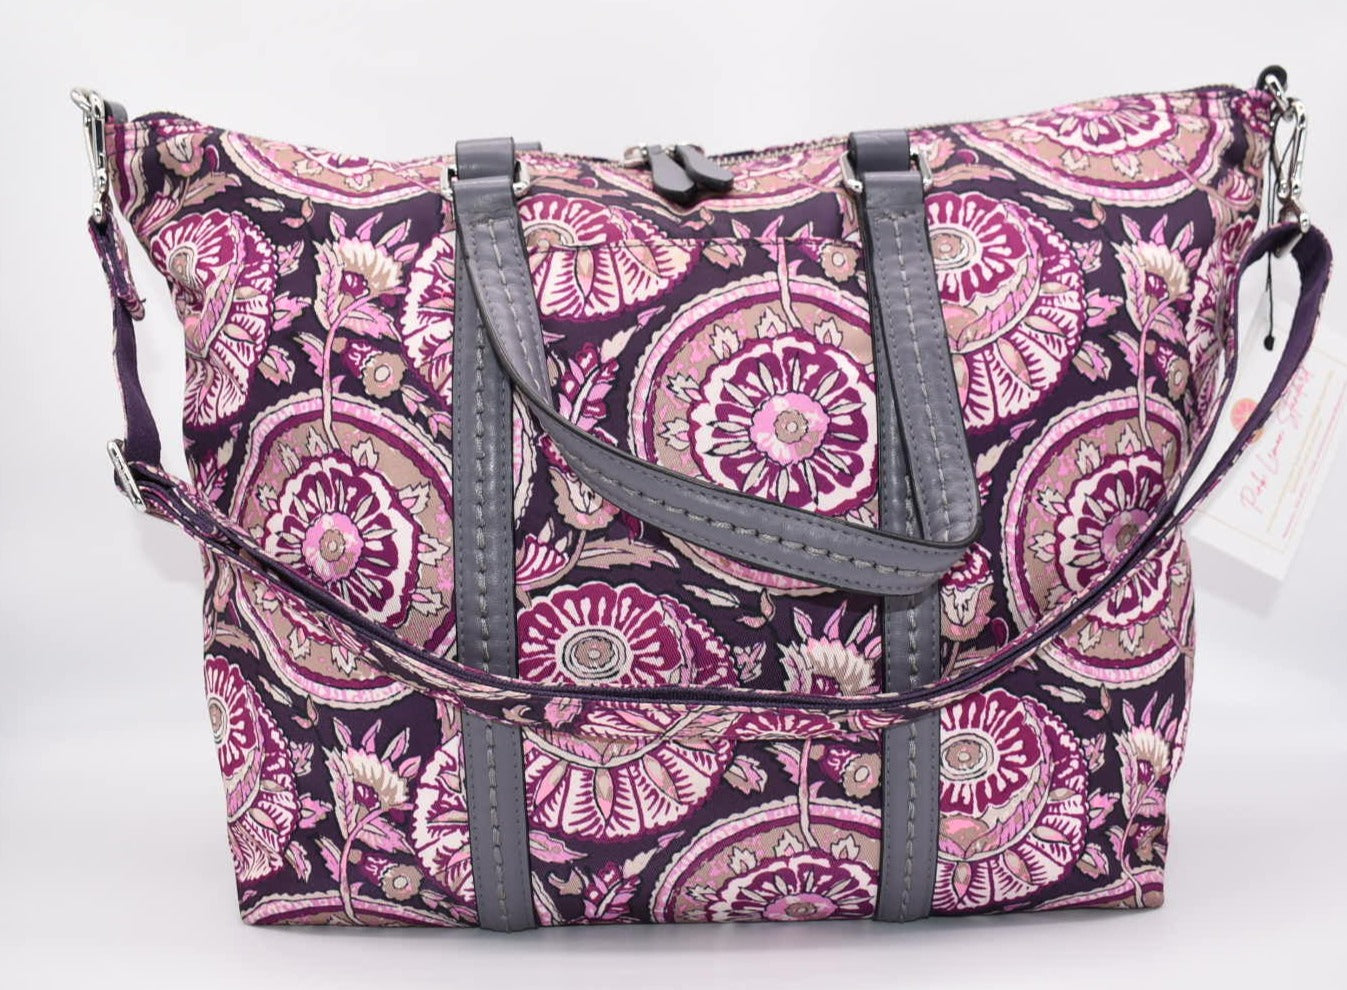 Vera Bradley Midtown Small Tote Bag in "Lei Flowers" Pattern